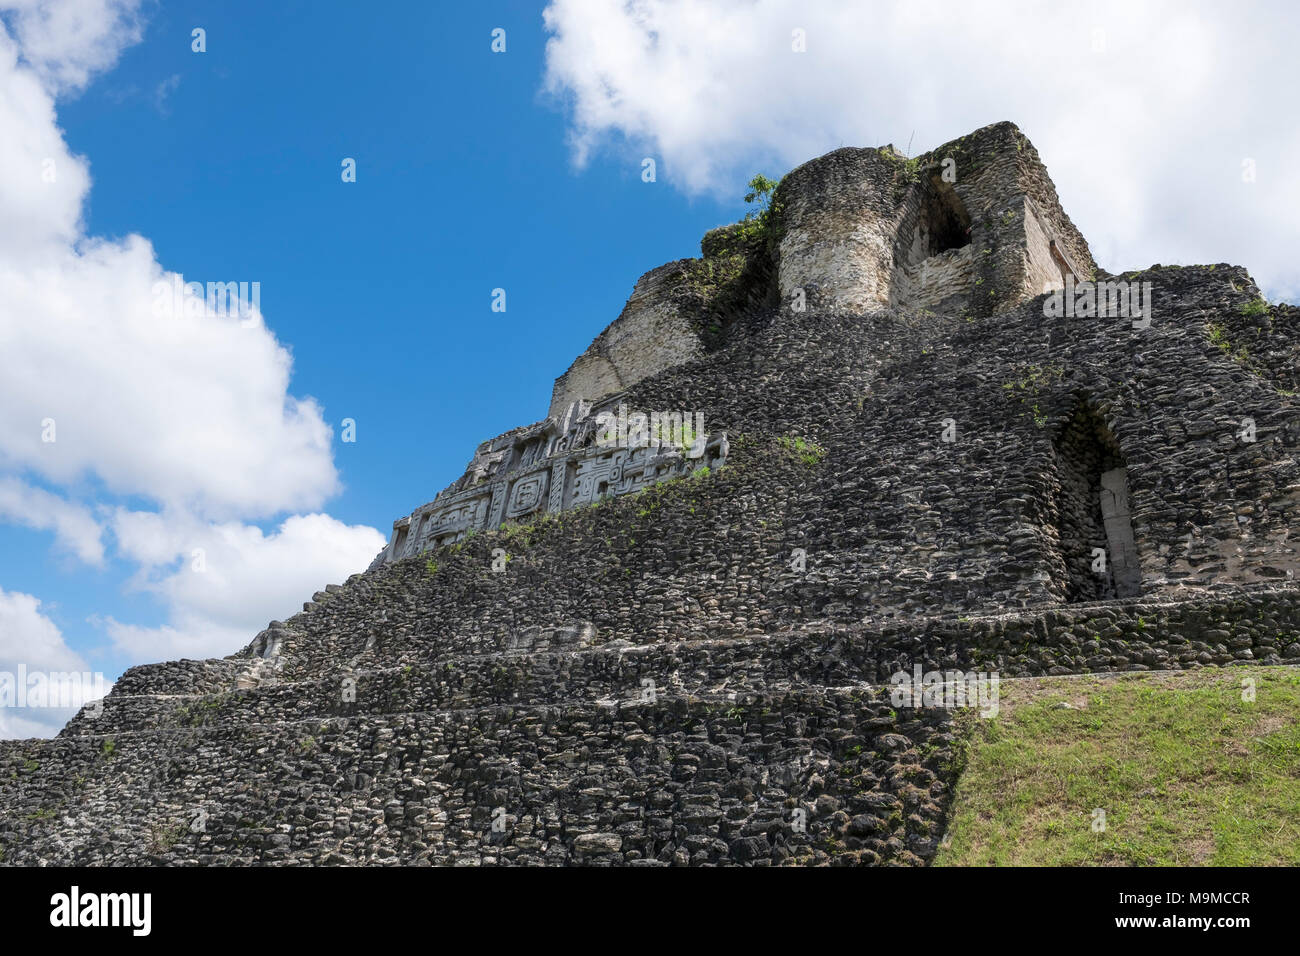 Ruines de temples Mayas et les structures en Xunantunich, Belize Banque D'Images